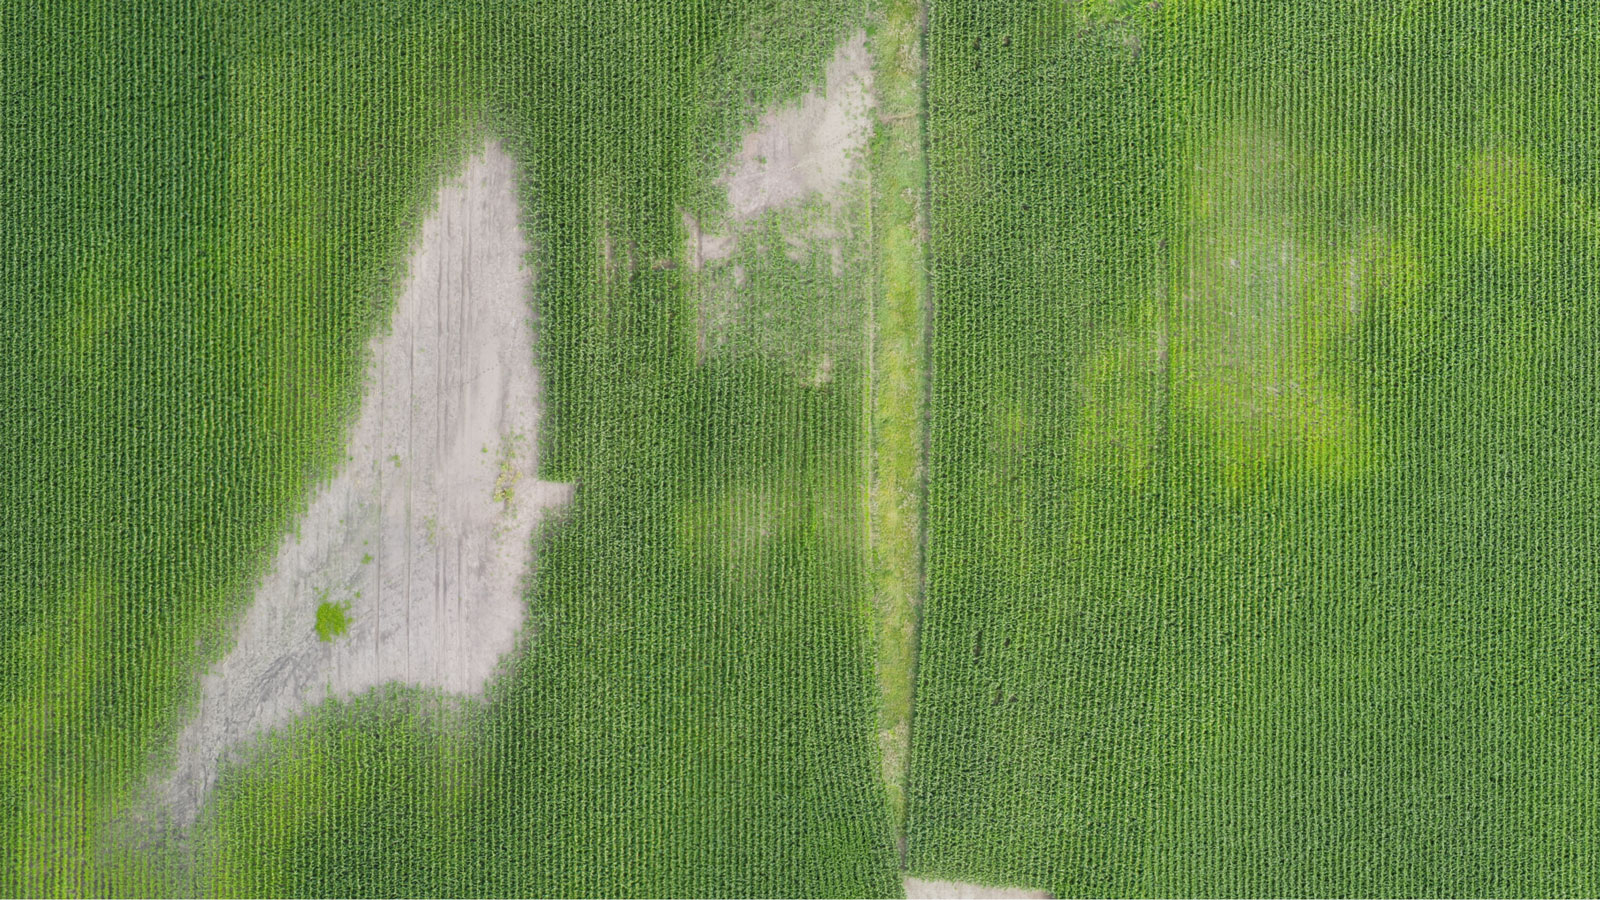 Rendimiento ortomosaico para cartografía agrícola con ag drone